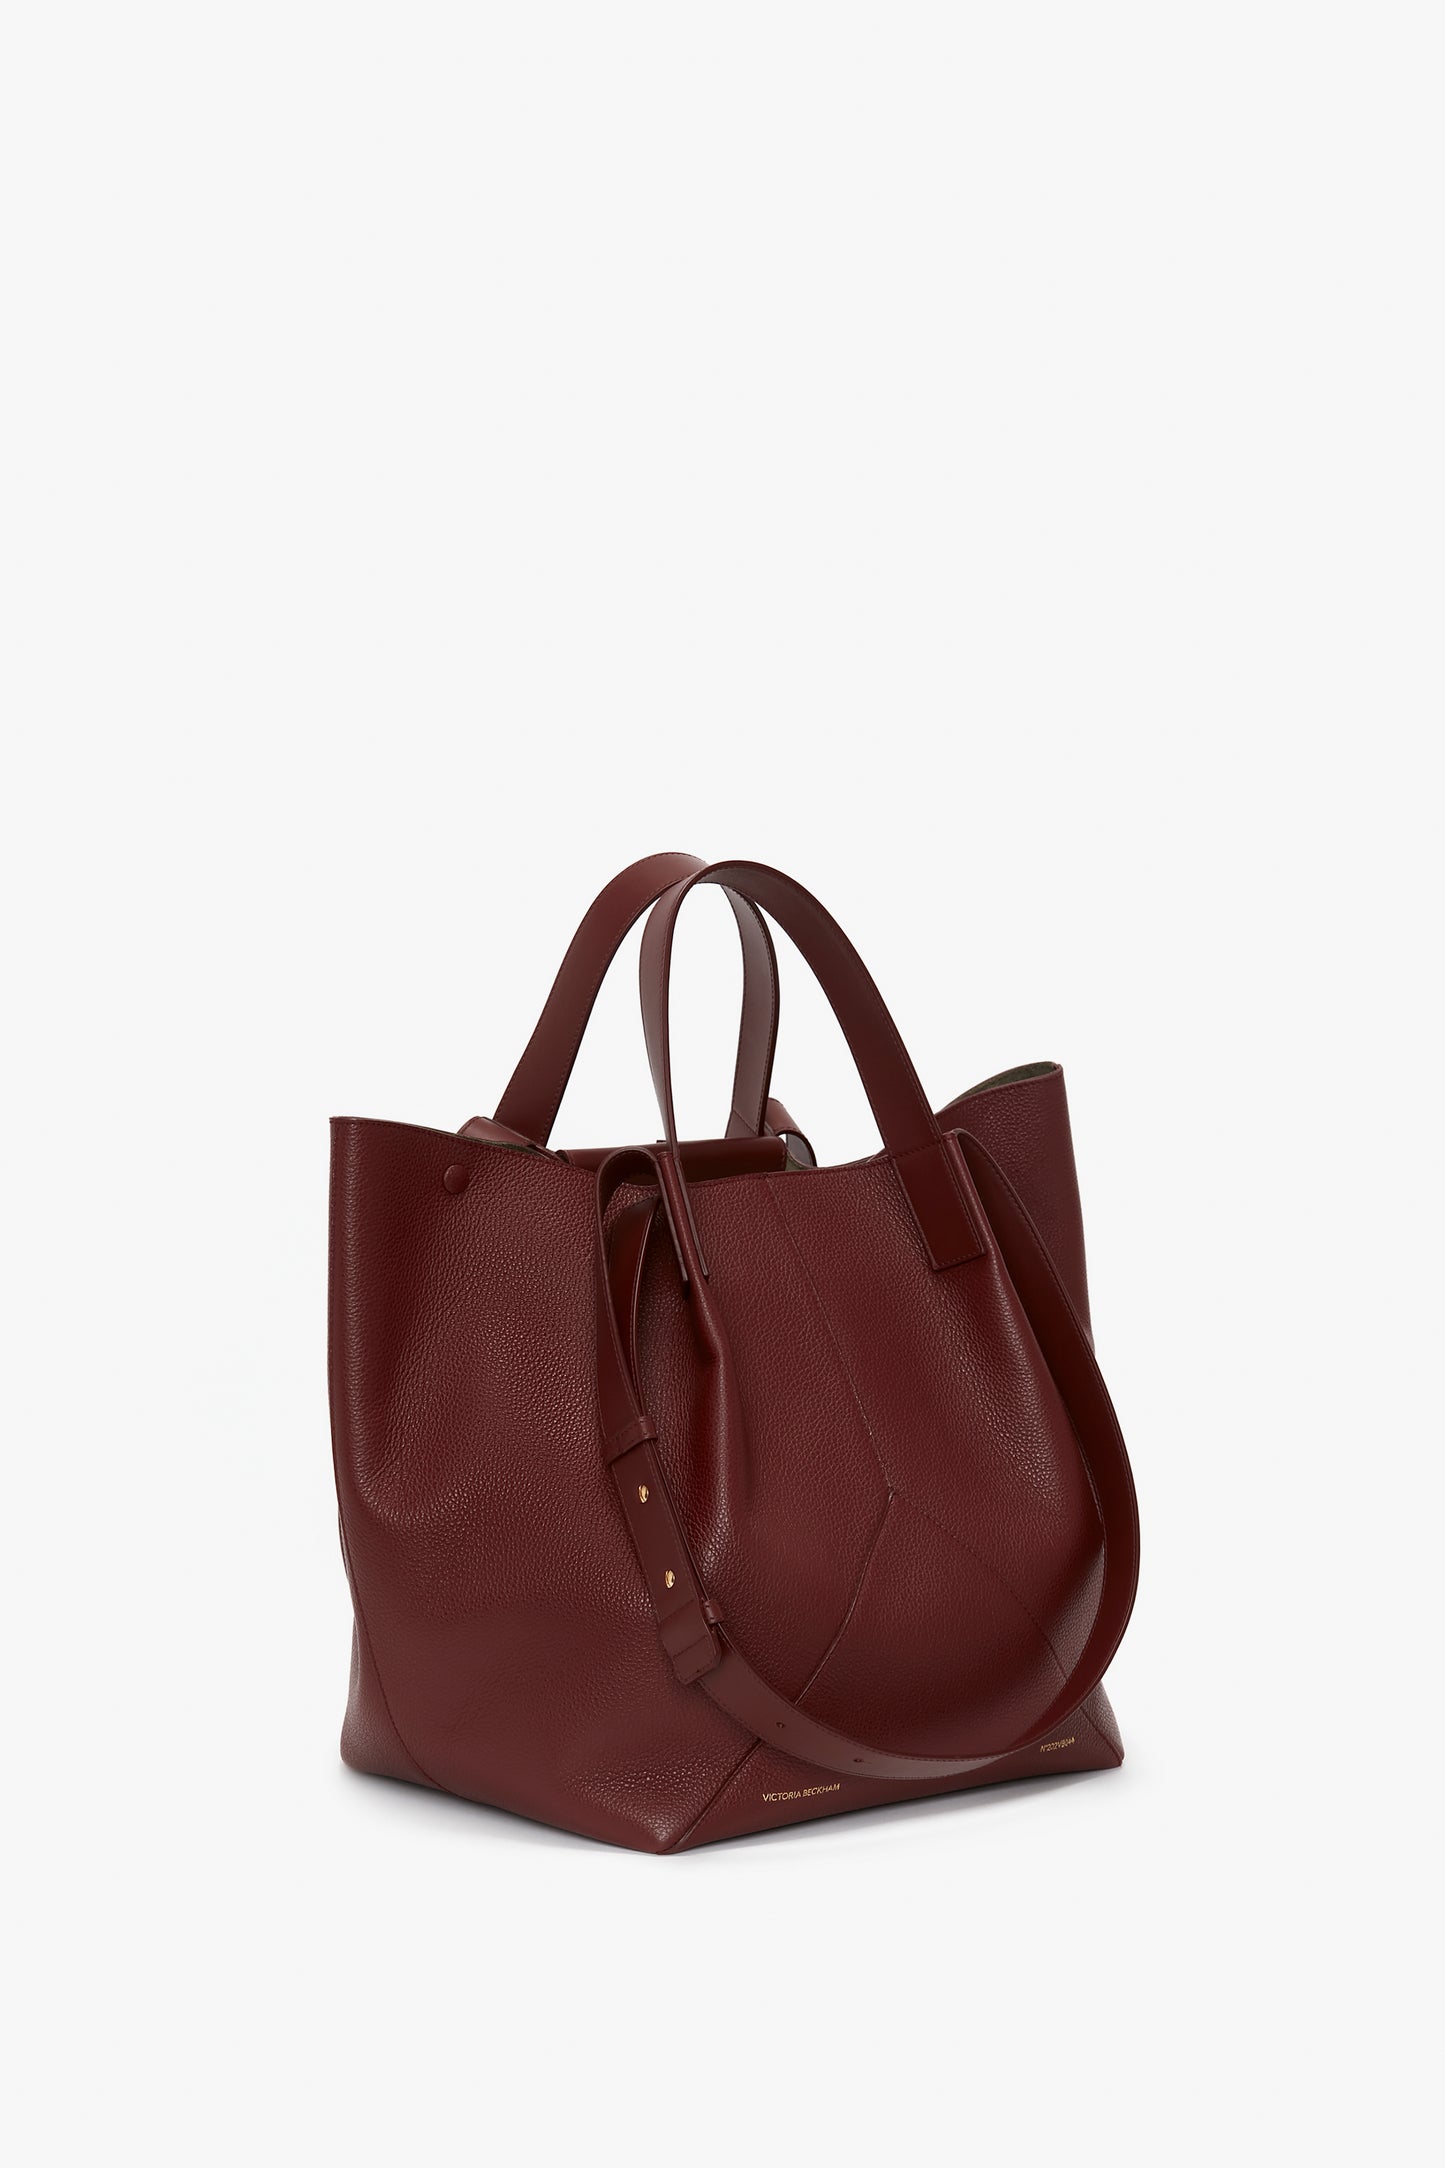 Buy Women Maroon Tote Bag Online | SKU: 66-7202-44-10-Metro Shoes